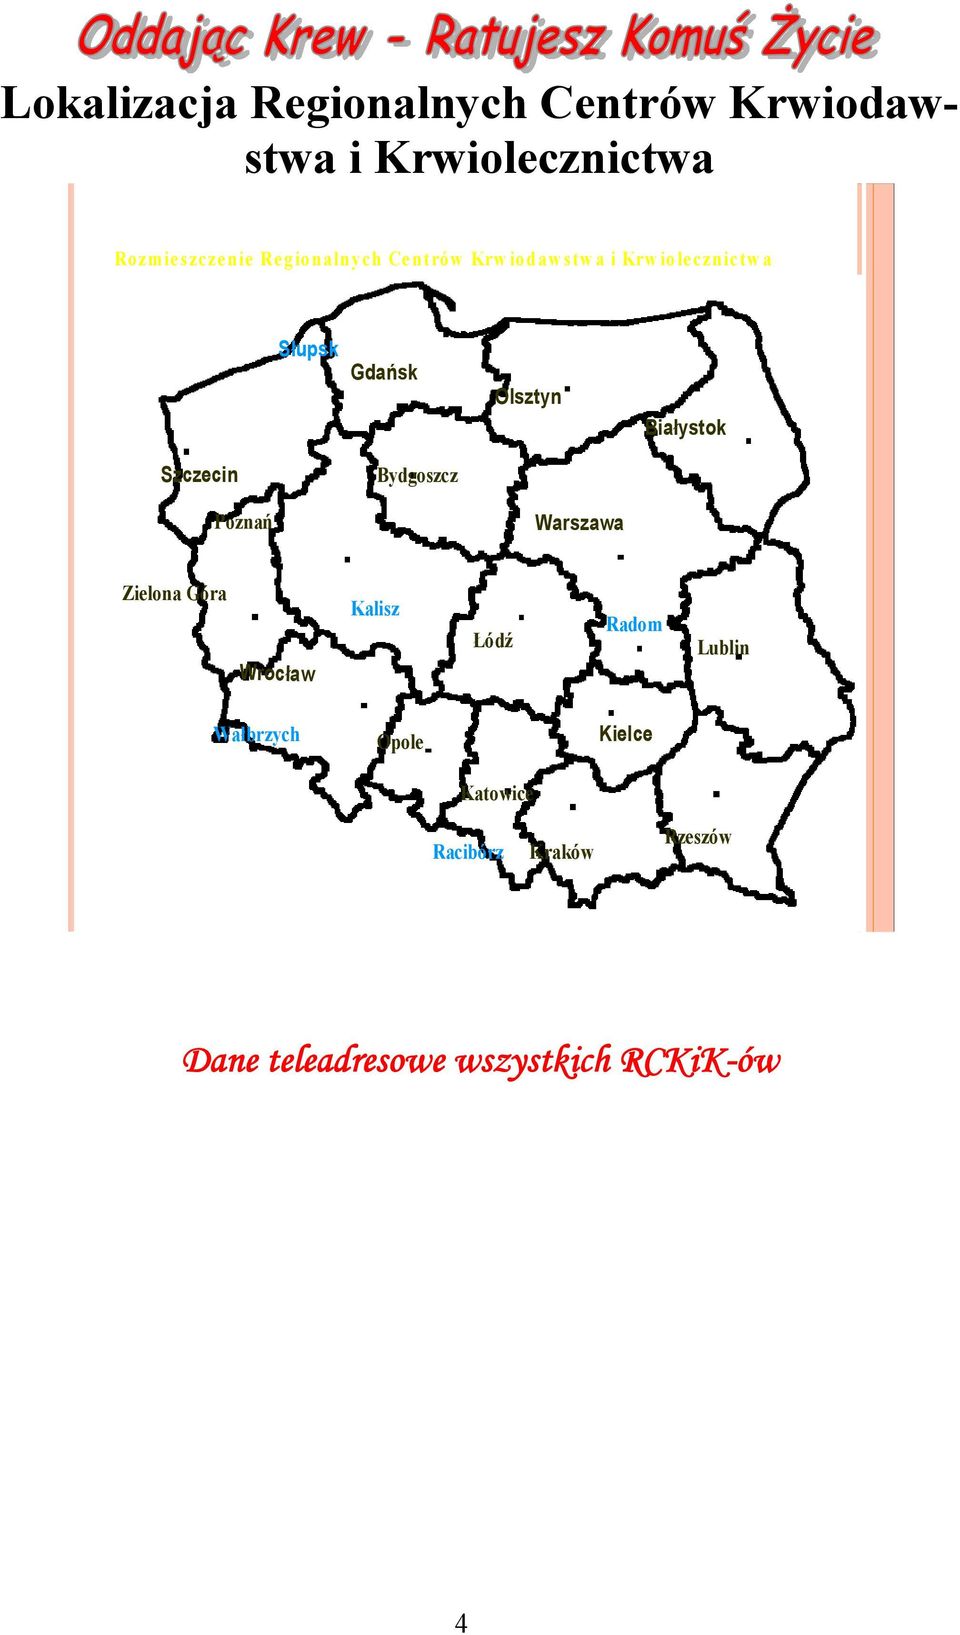 Szczecin Bydgoszcz Poznań Warszawa Zielona Góra Wrocław Kalisz Łódź Radom Lublin